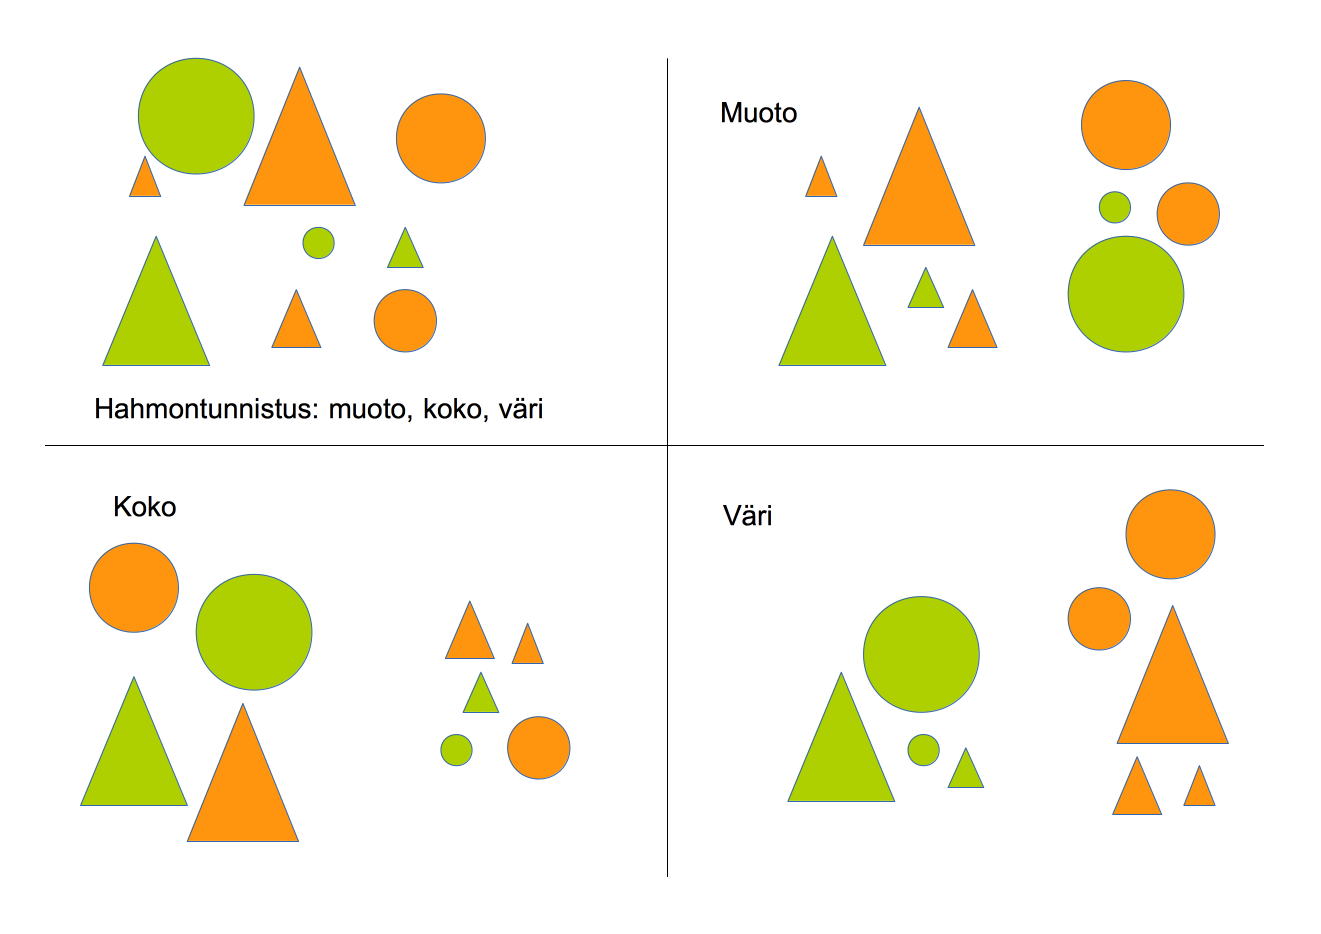 Hahmontunnistuksessa datasta etsitään ominaisuuksia, joiden perusteella se esimerkiksi jaetaan eri luokkiin. Tässä kuviot on jaettu kahteen luokkaan muodon, koon ja värin perusteella.